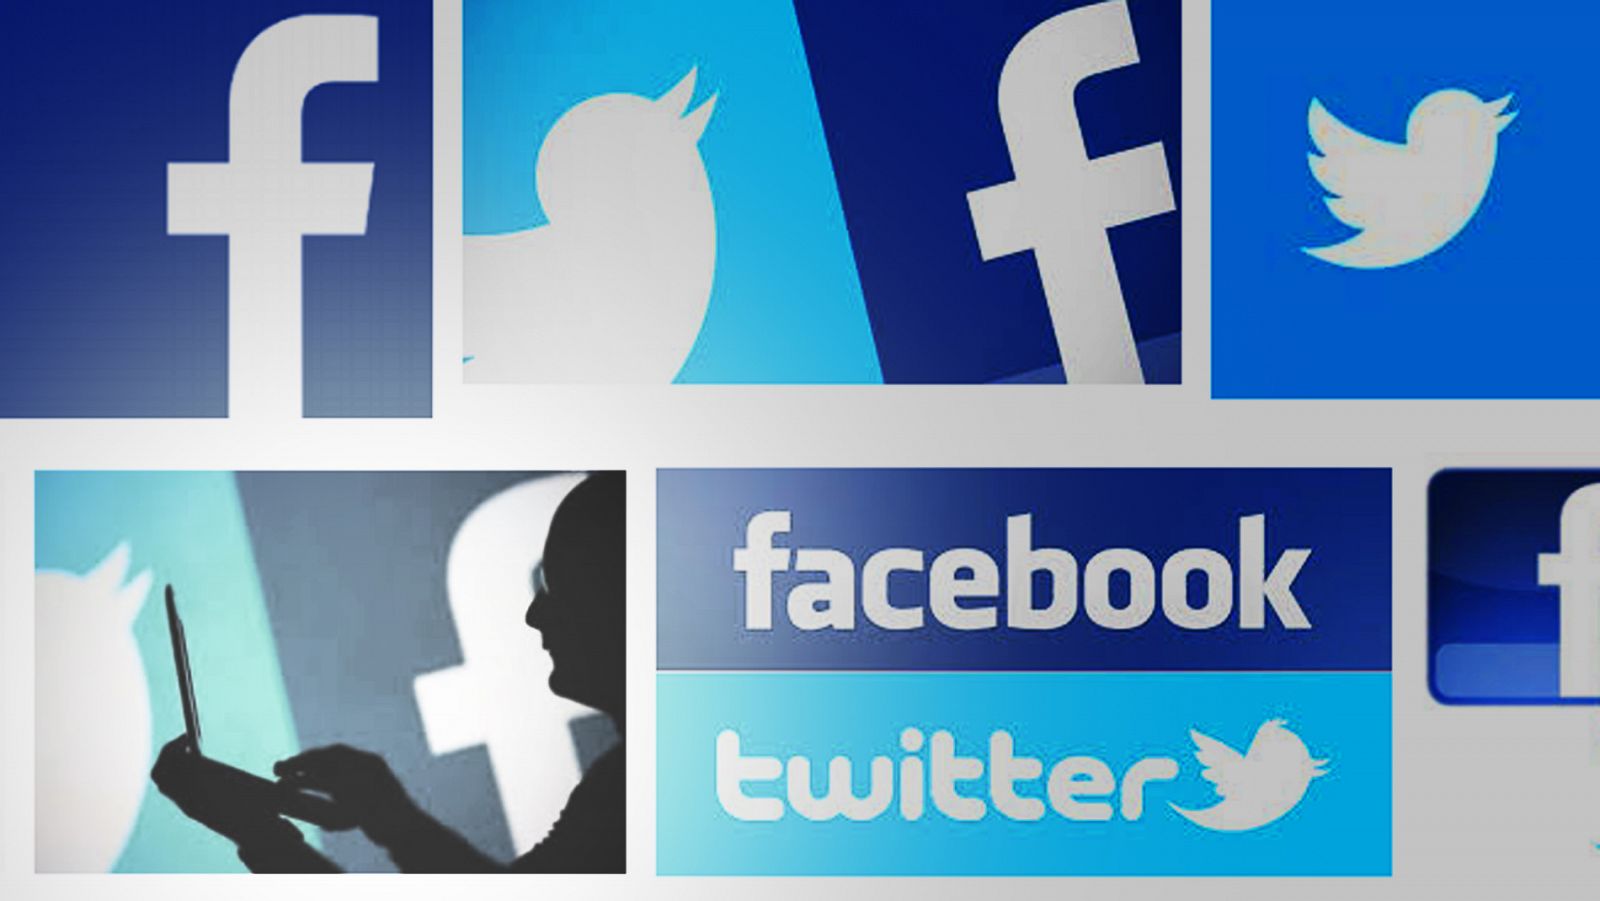 Logotipos de Twitter y Facebook en una búsqueda de Google